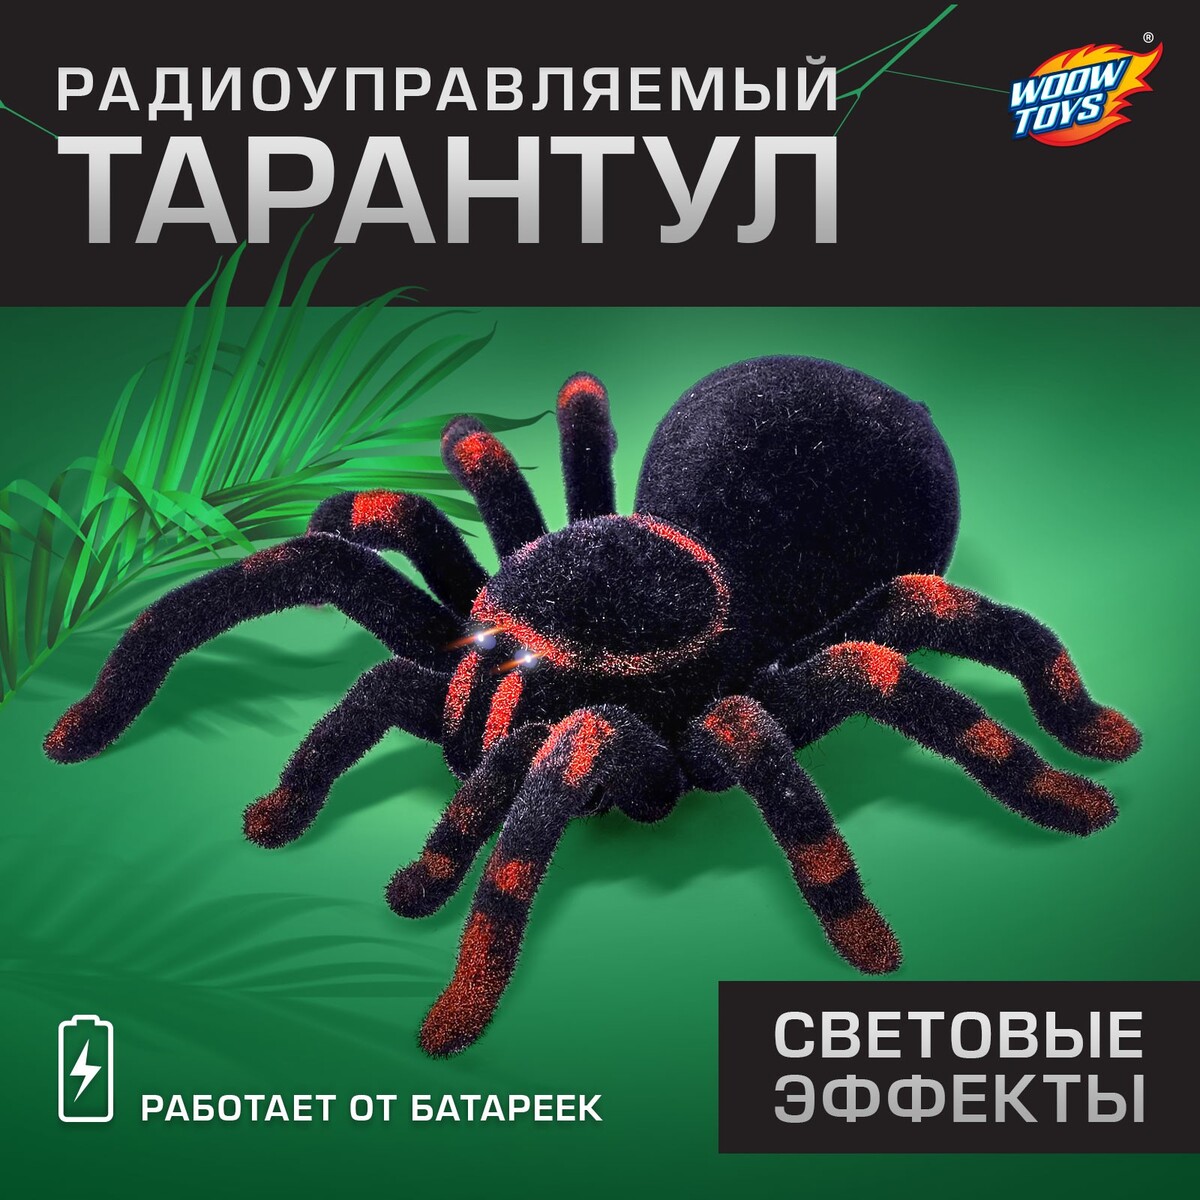 Паук радиоуправляемый интерактивная игрушка eztec паук тарантул радиоуправляемый